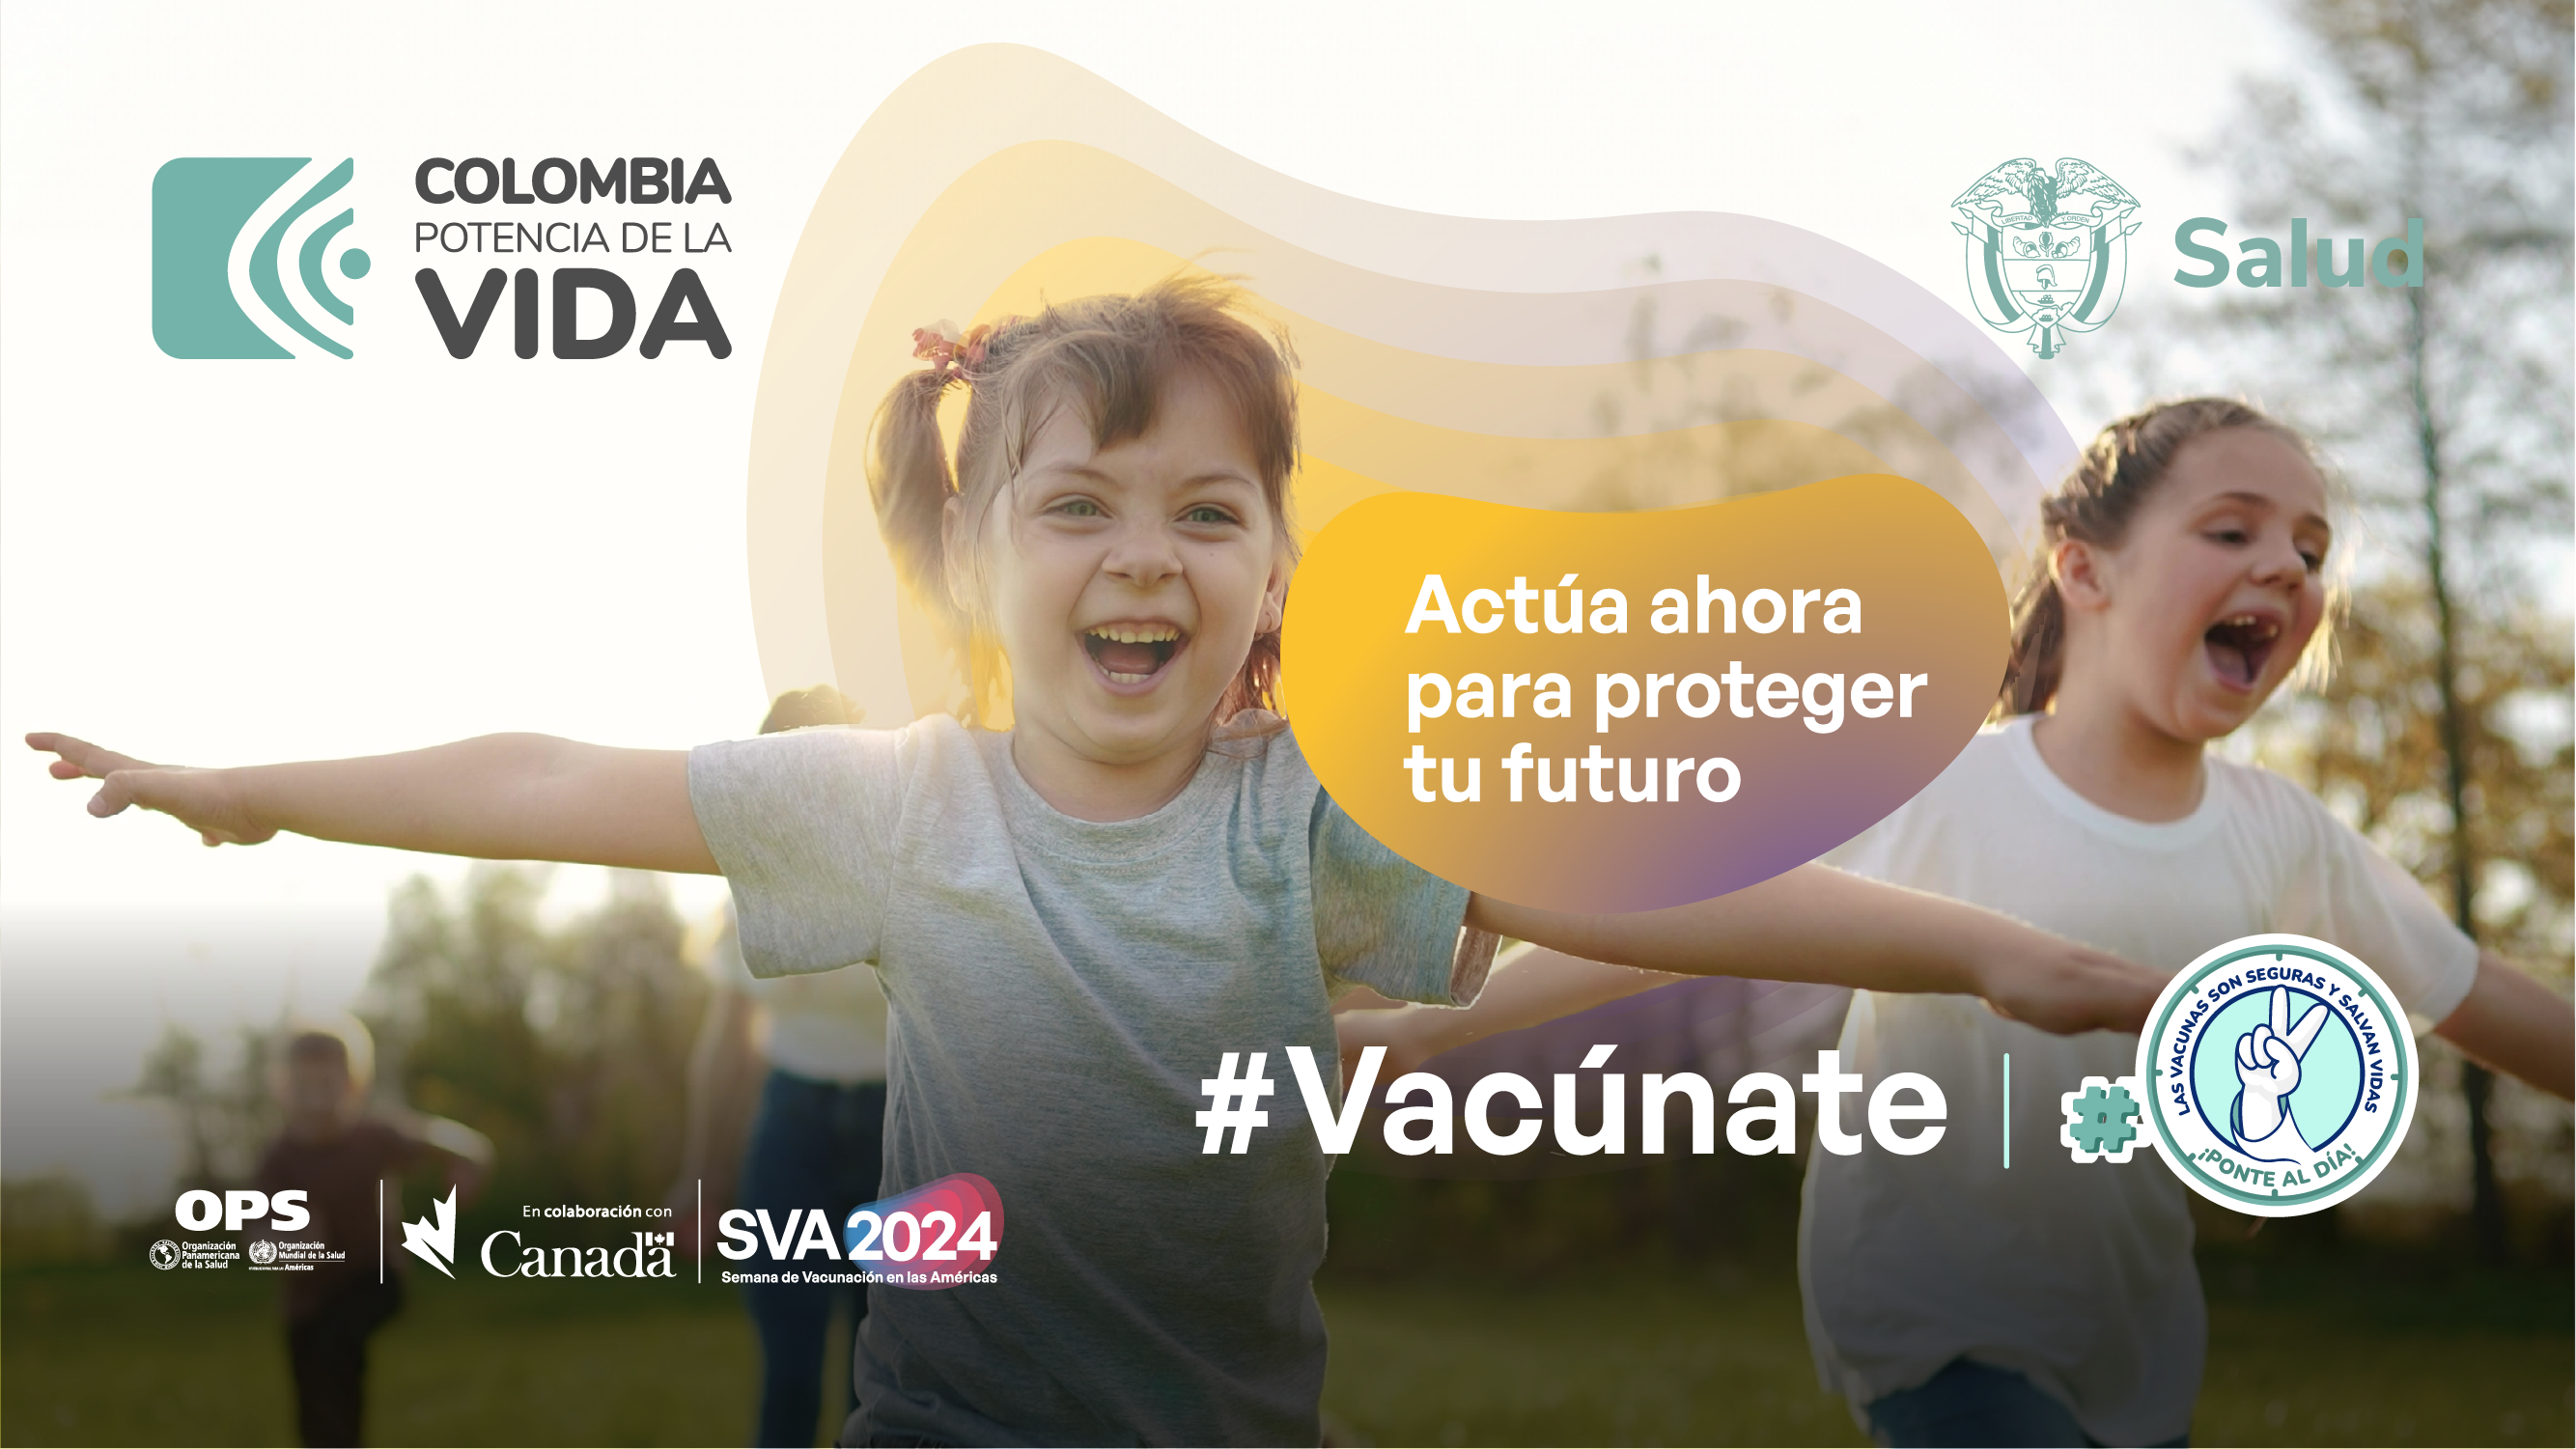 ¡Ponte al día con las vacunas! abril se viste de inmunización: Este sábado gran jornada de vacunación nacional